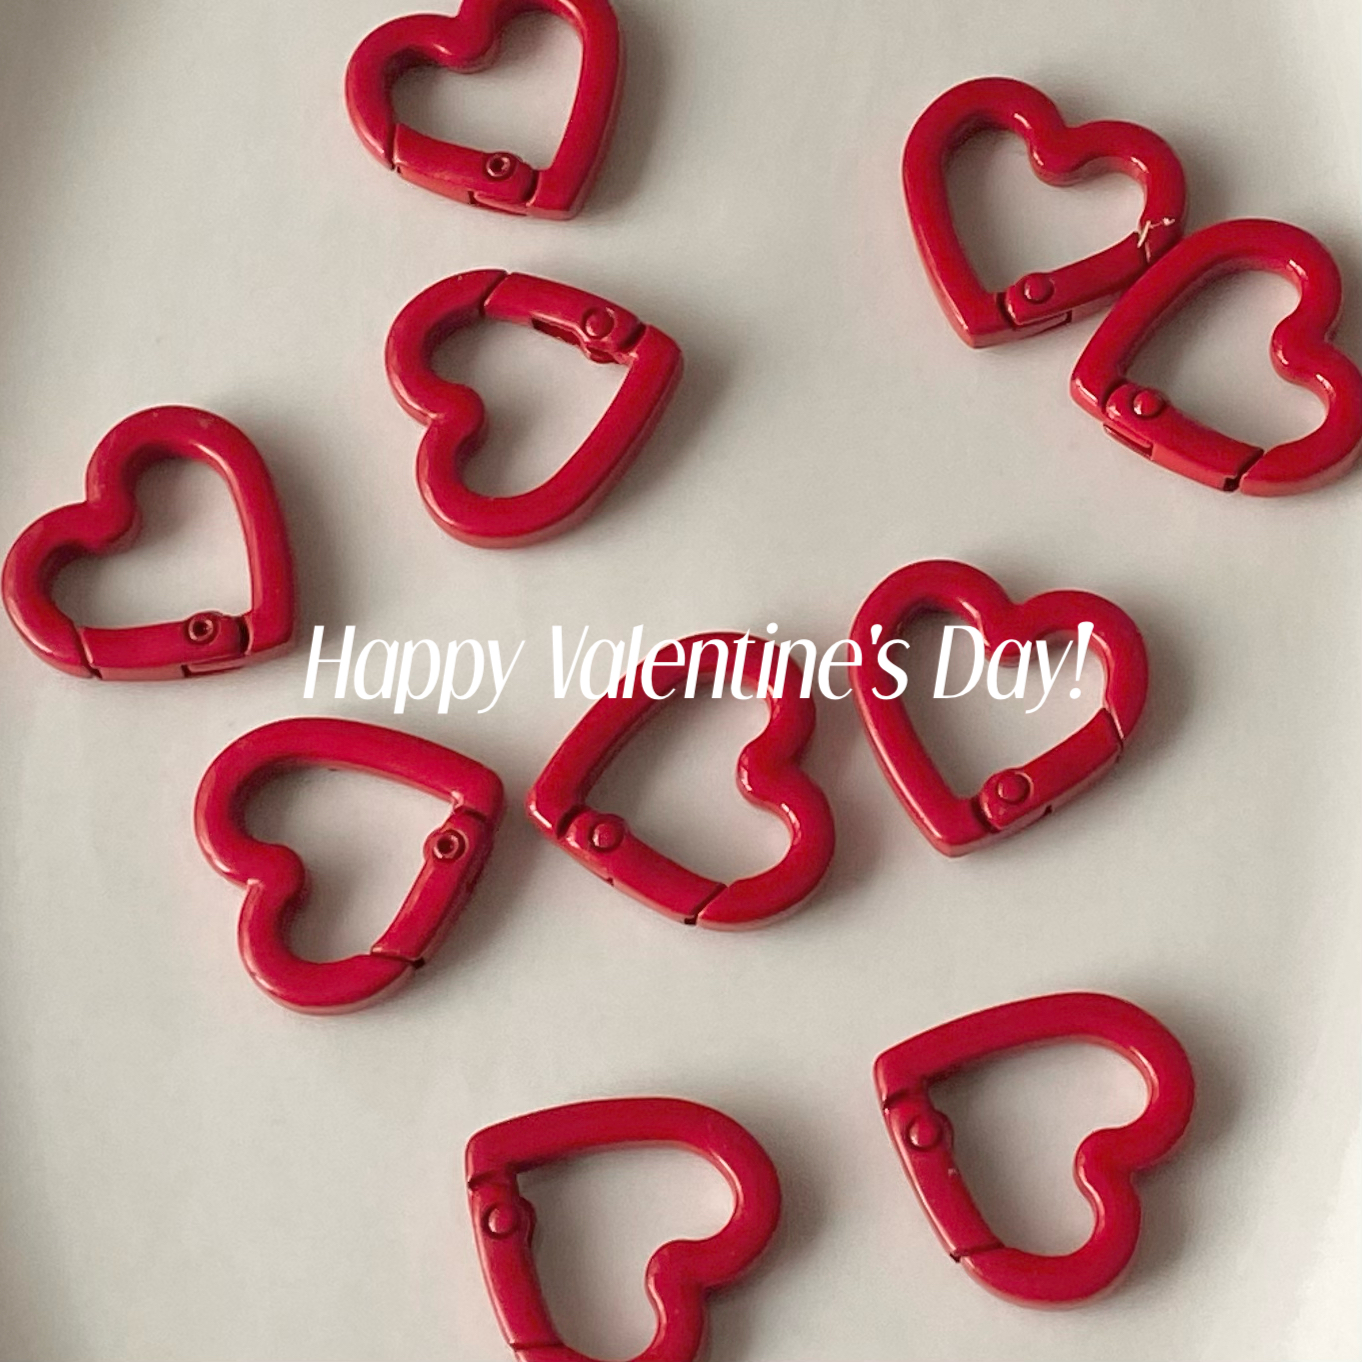 Happy Valentine's Day!🍫